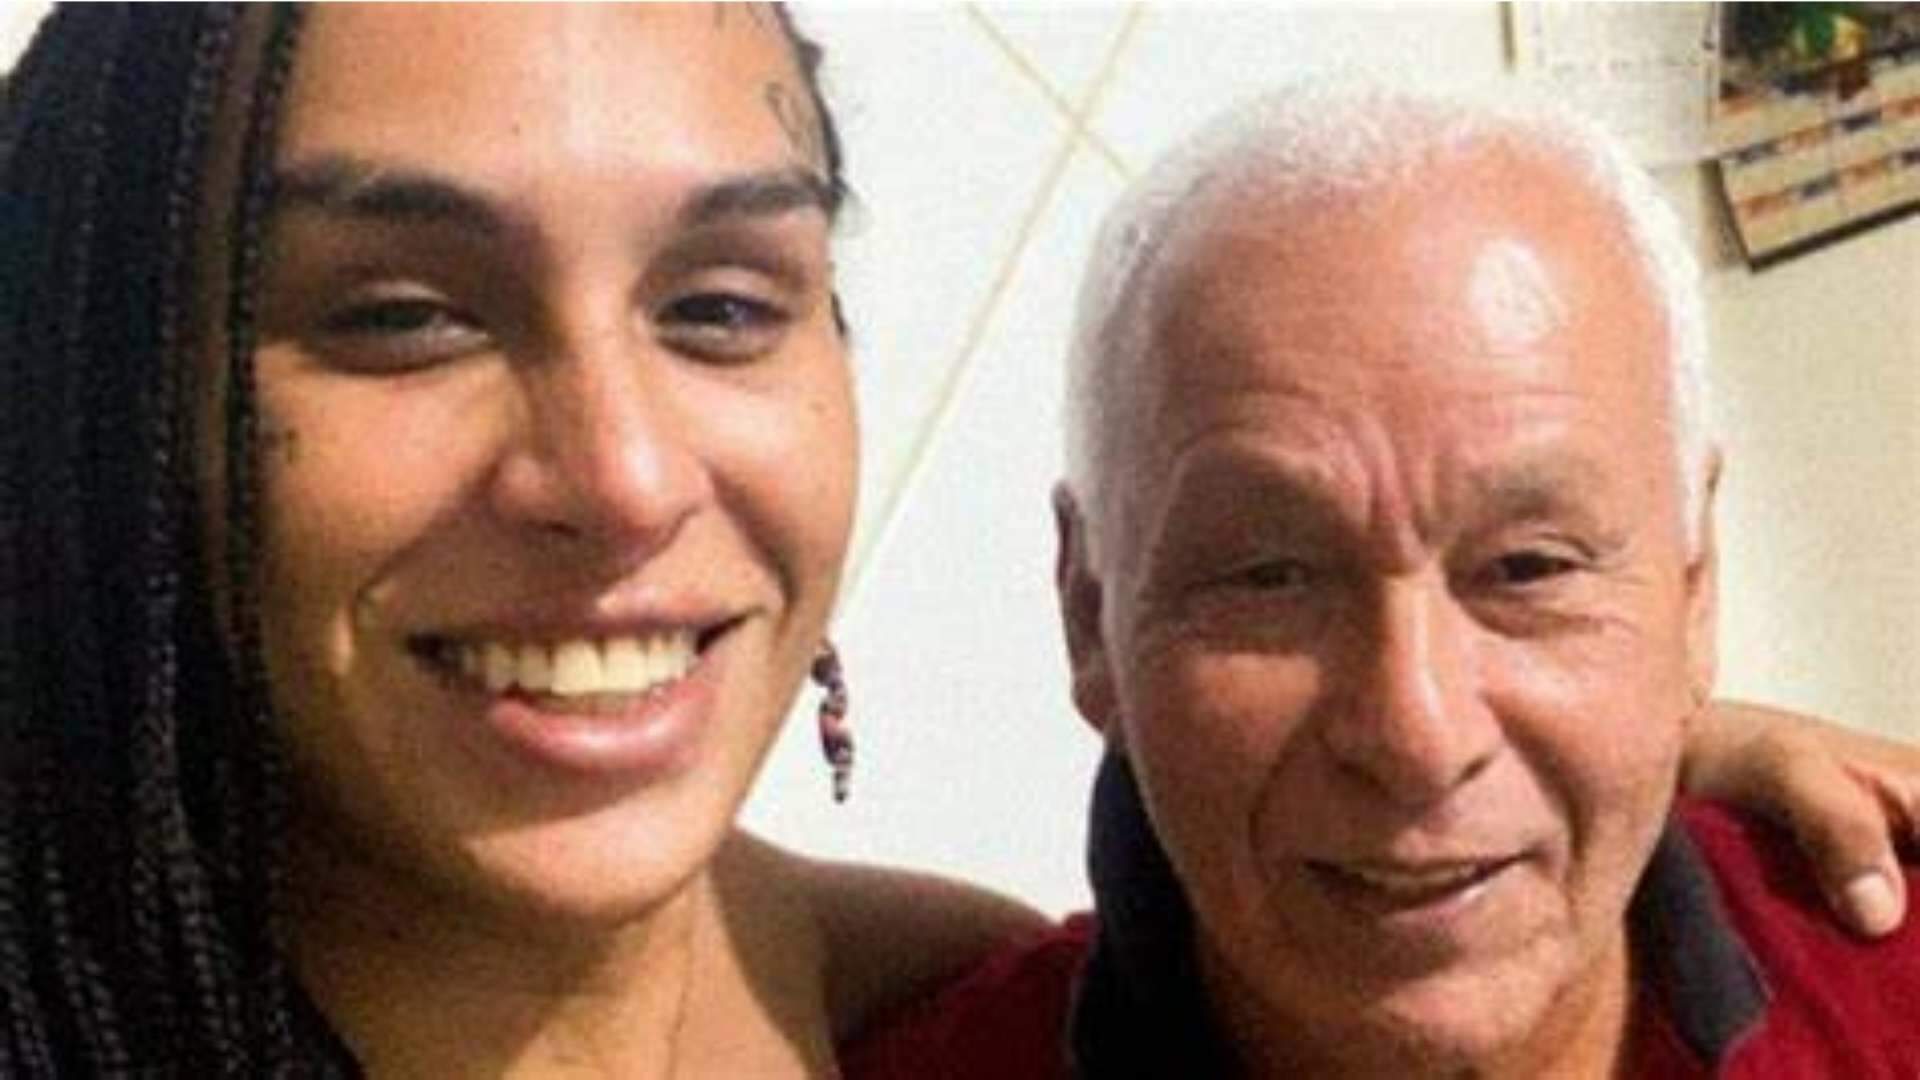 Pai de Linn da Quebrada morre em São Paulo e ex-BBB se pronuncia: “A vida é feita de instantes” - Metropolitana FM